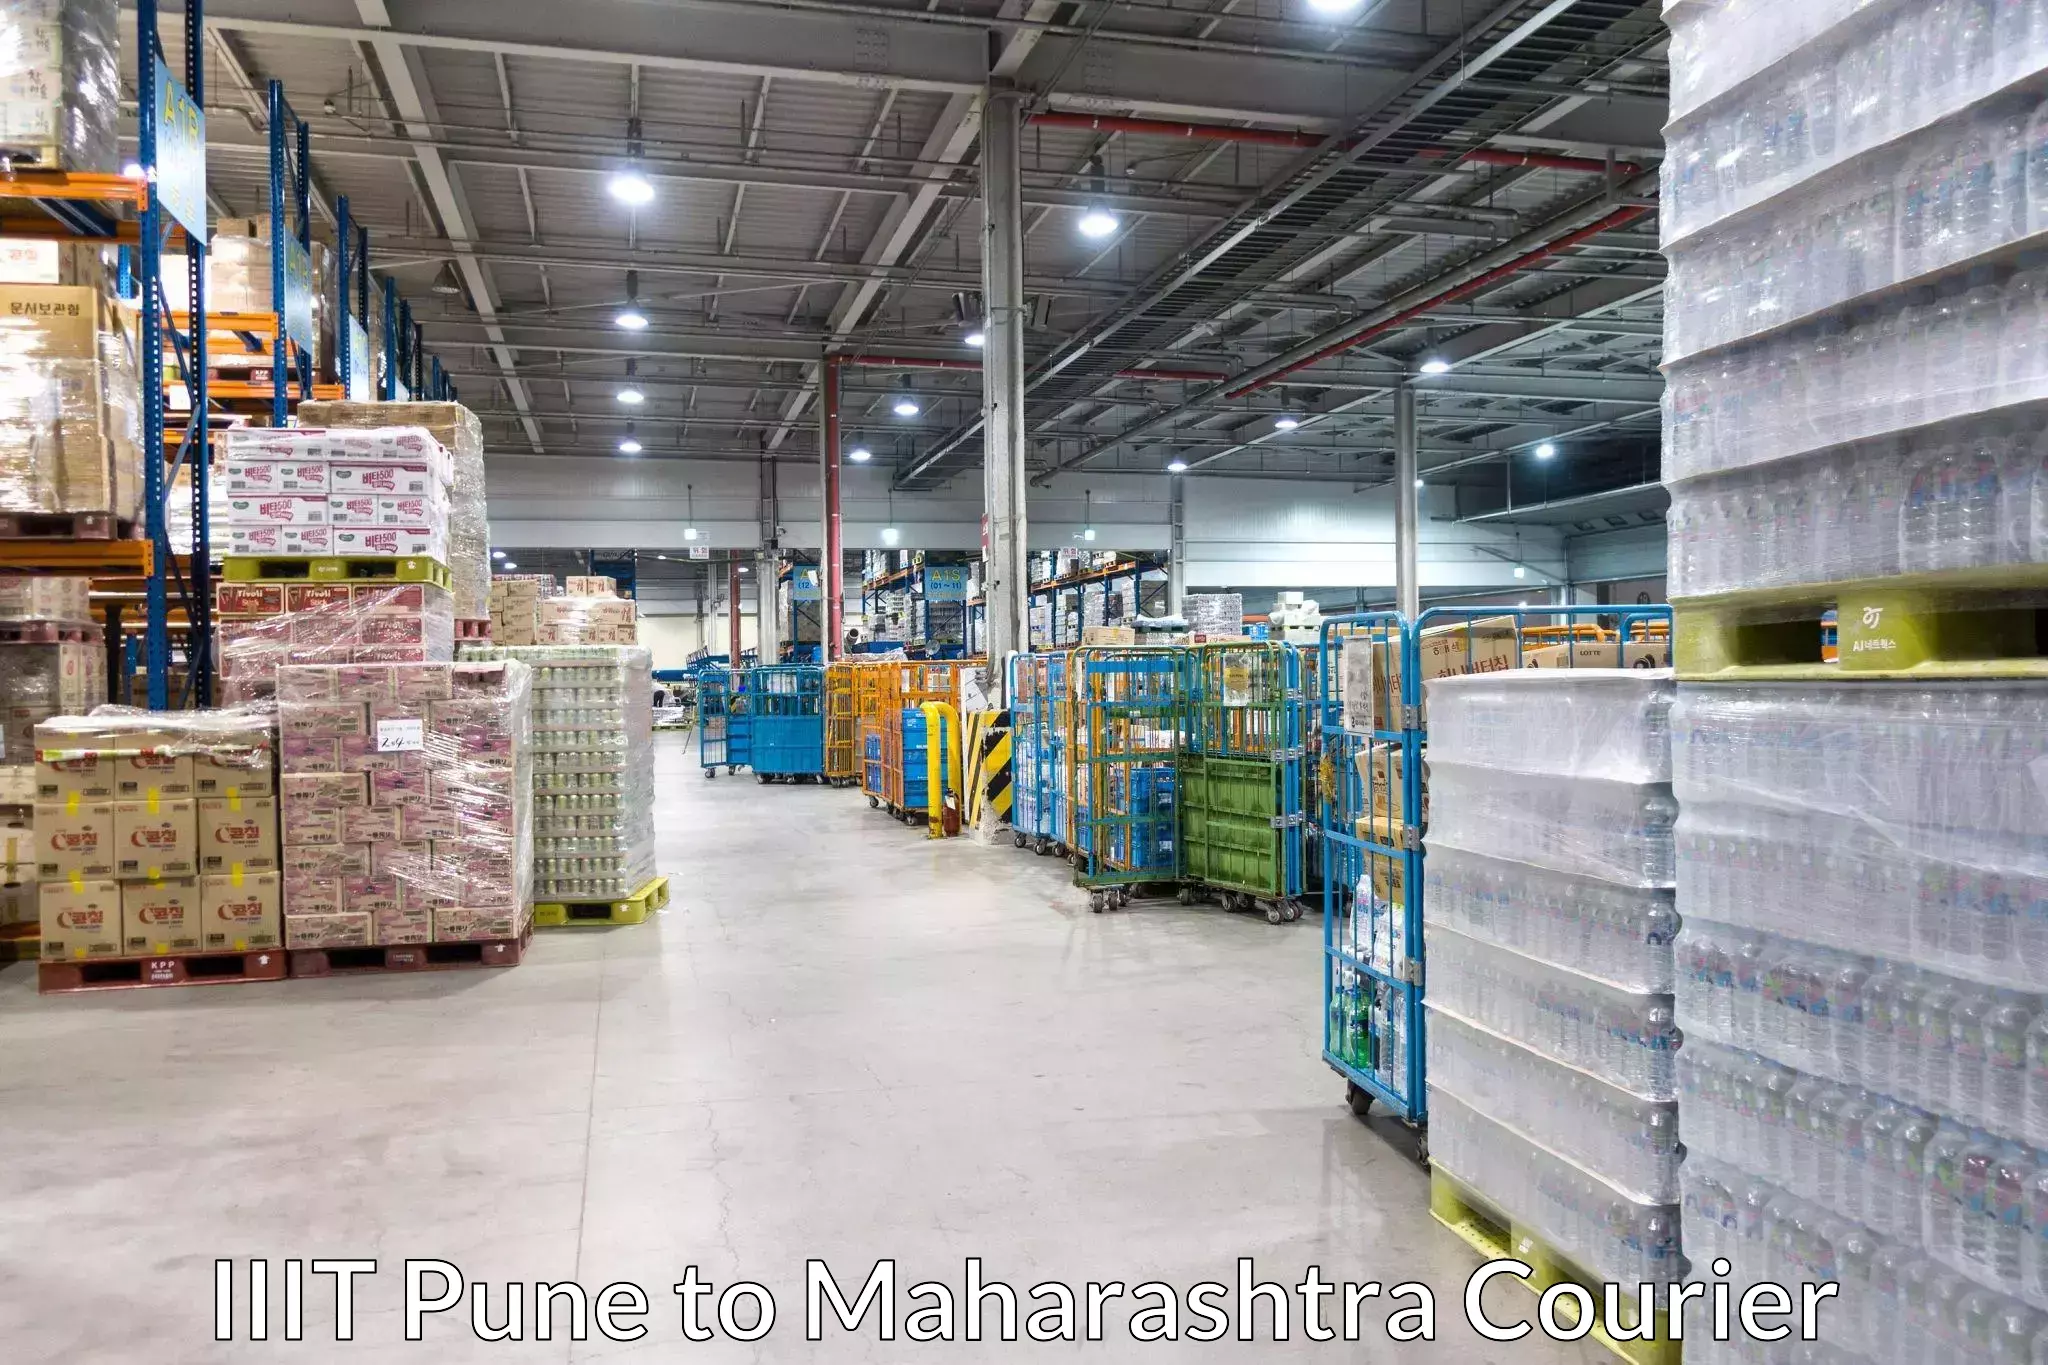 Specialized moving company IIIT Pune to Pimpalgaon